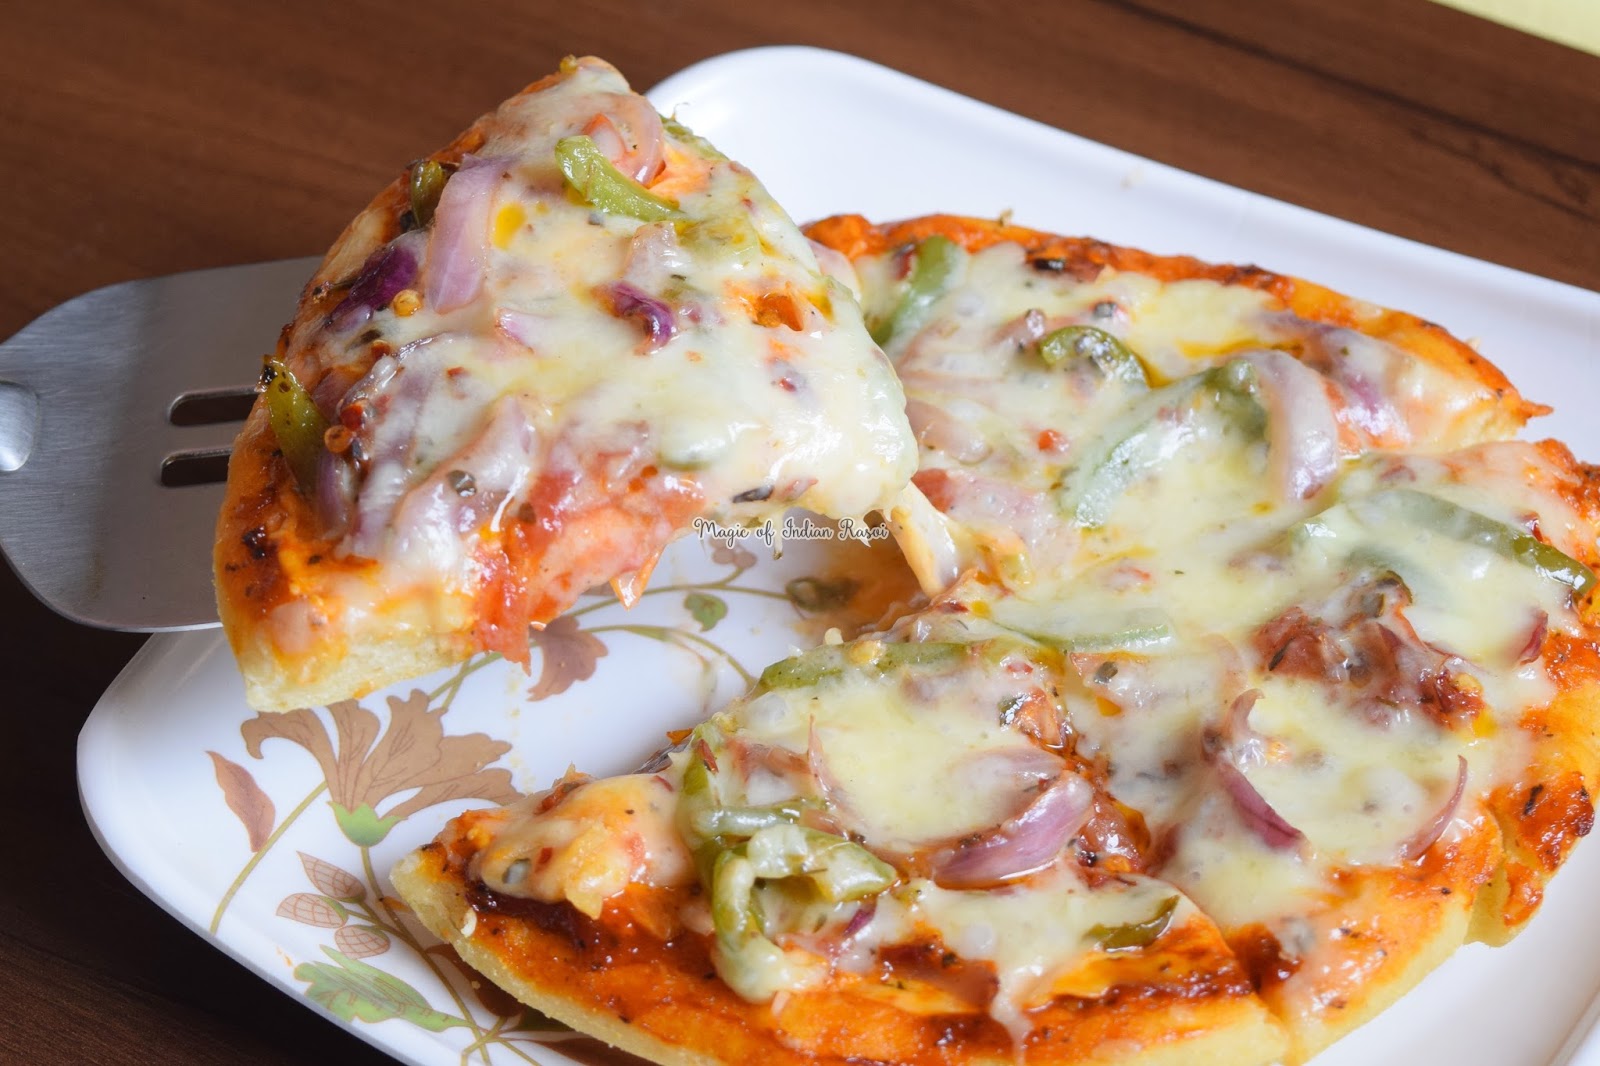 No Oven Veg Pizza - Pizza in Kadai Recipe - Homemade - No Yeast - नो ओवन वेज पिज्जा - पिज़्ज़ा कढ़ाई में बनाये - होममेड - बिना यीस्ट  रेसिपी - Priya R - Magic of Indian Rasoi